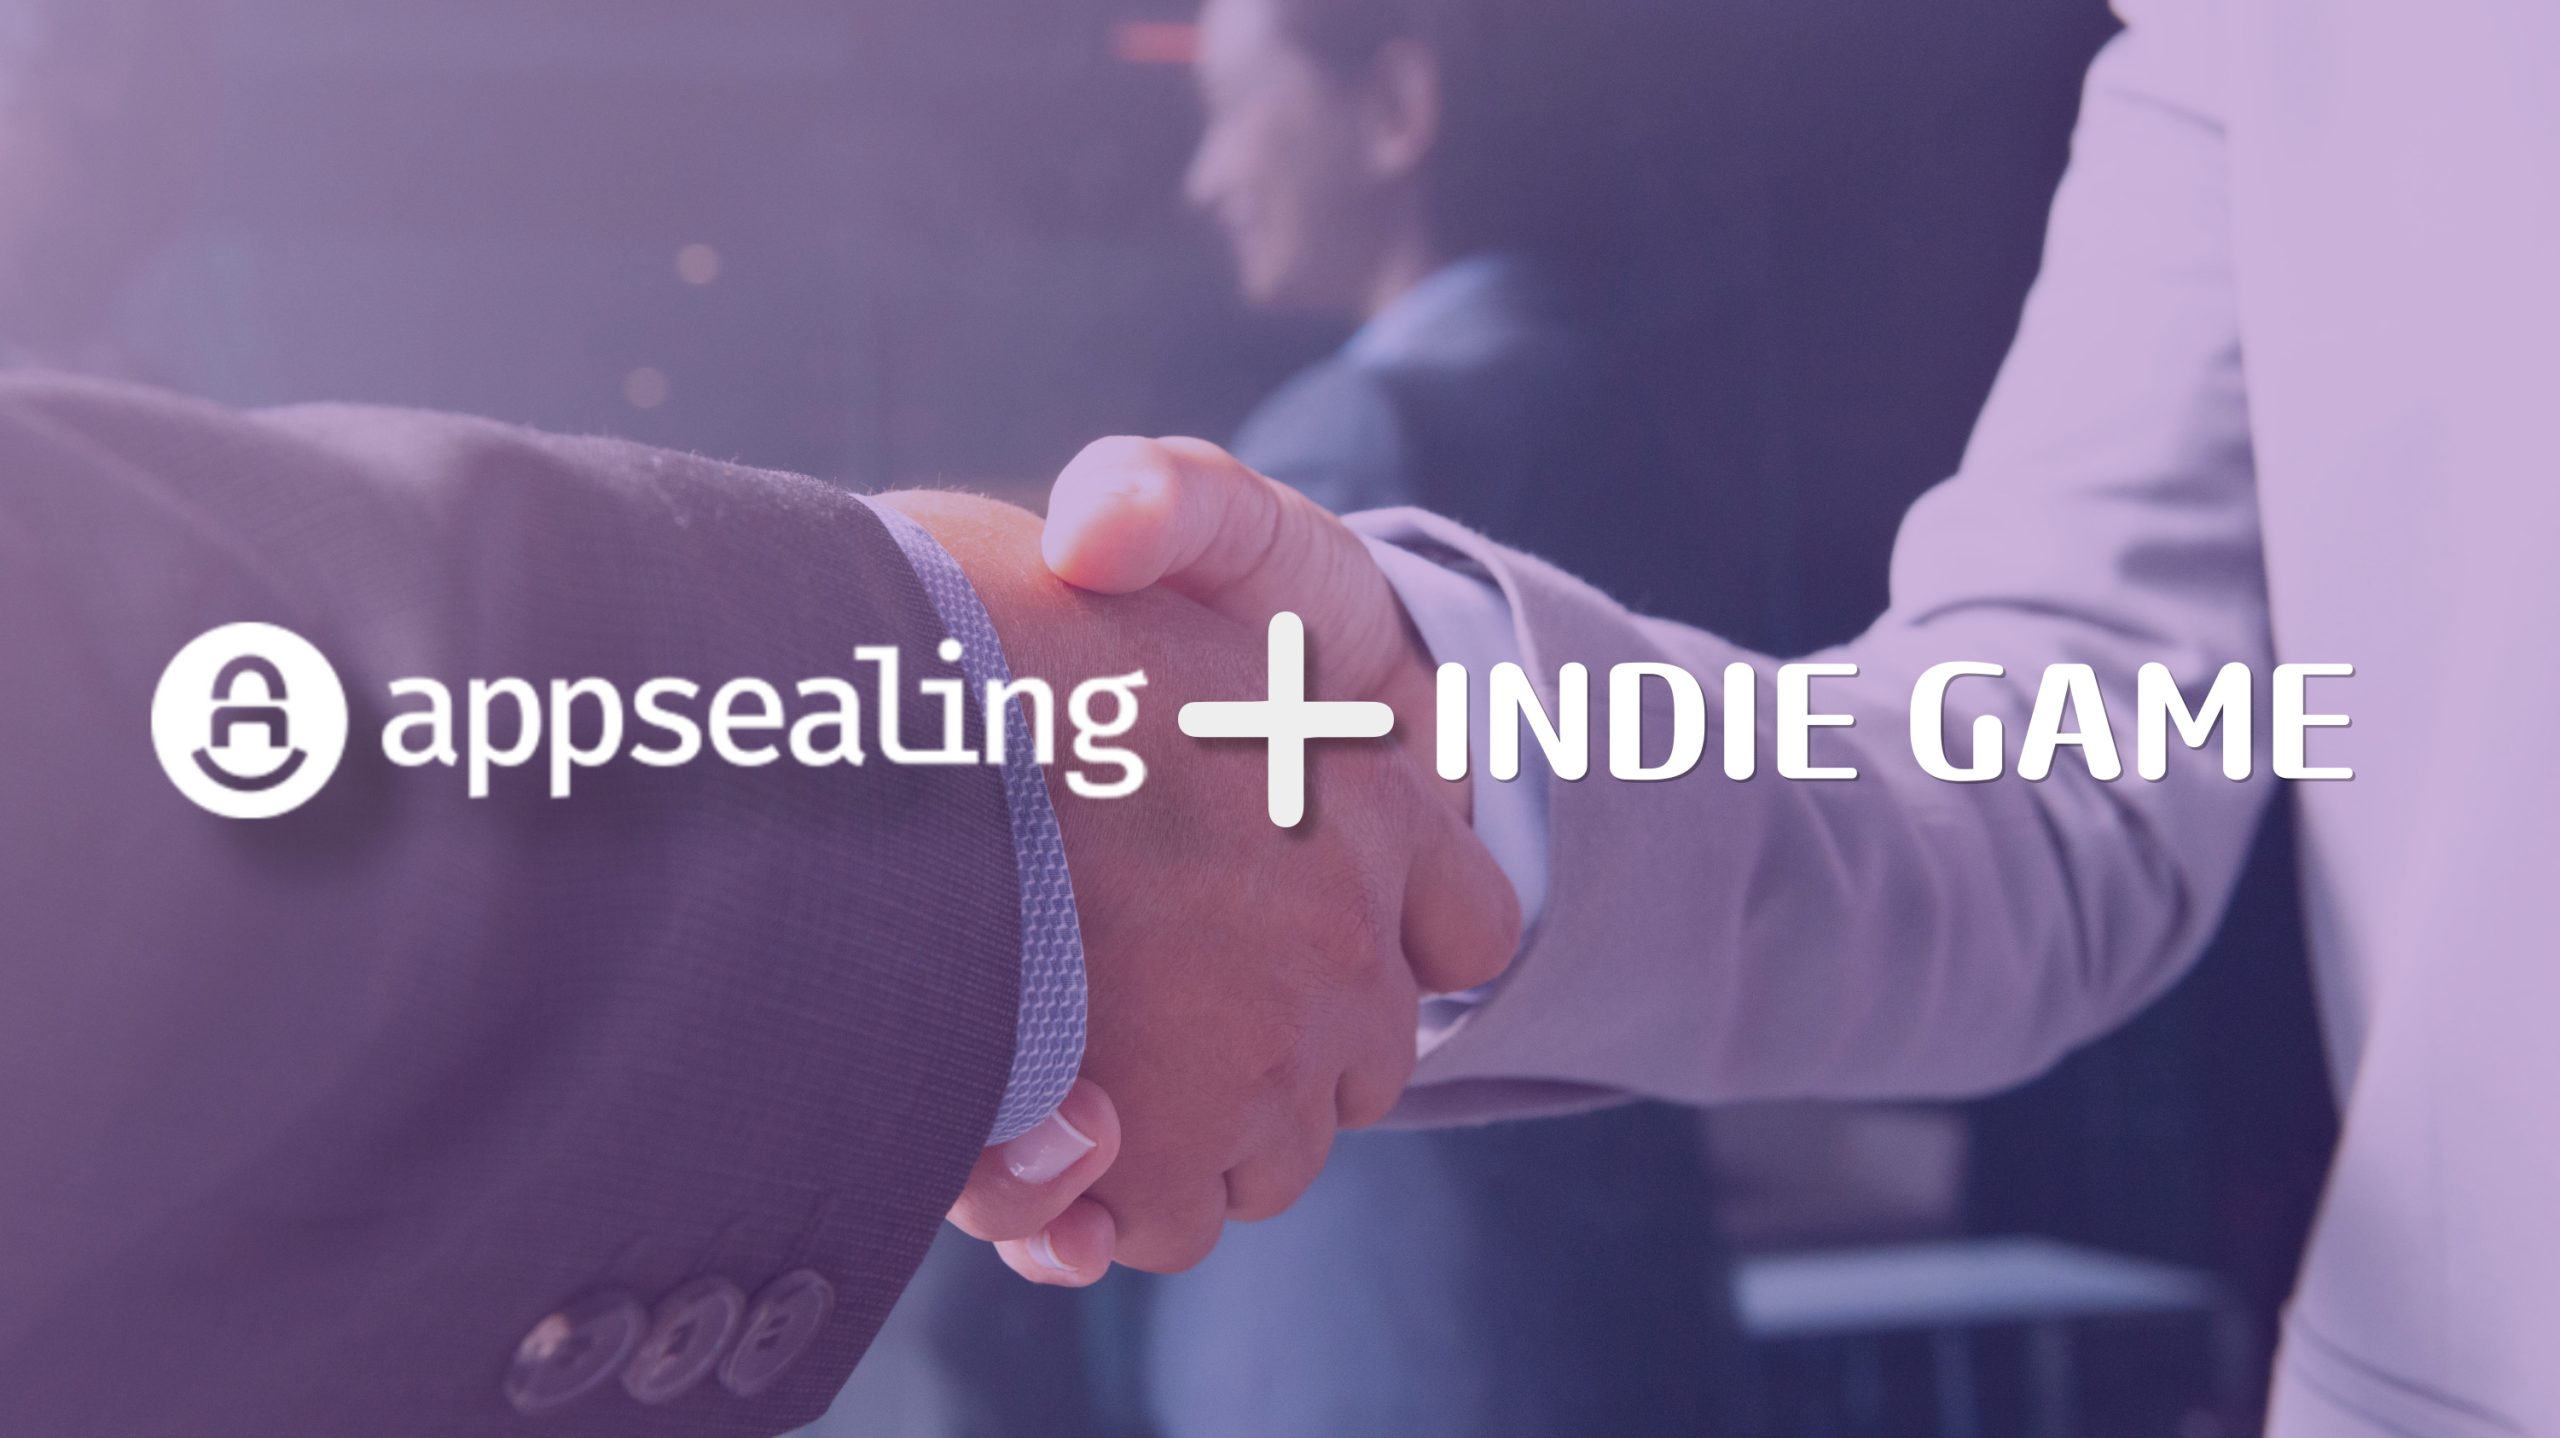 인디-게임-지원-앱실링-indie-gaems-support-appsealing